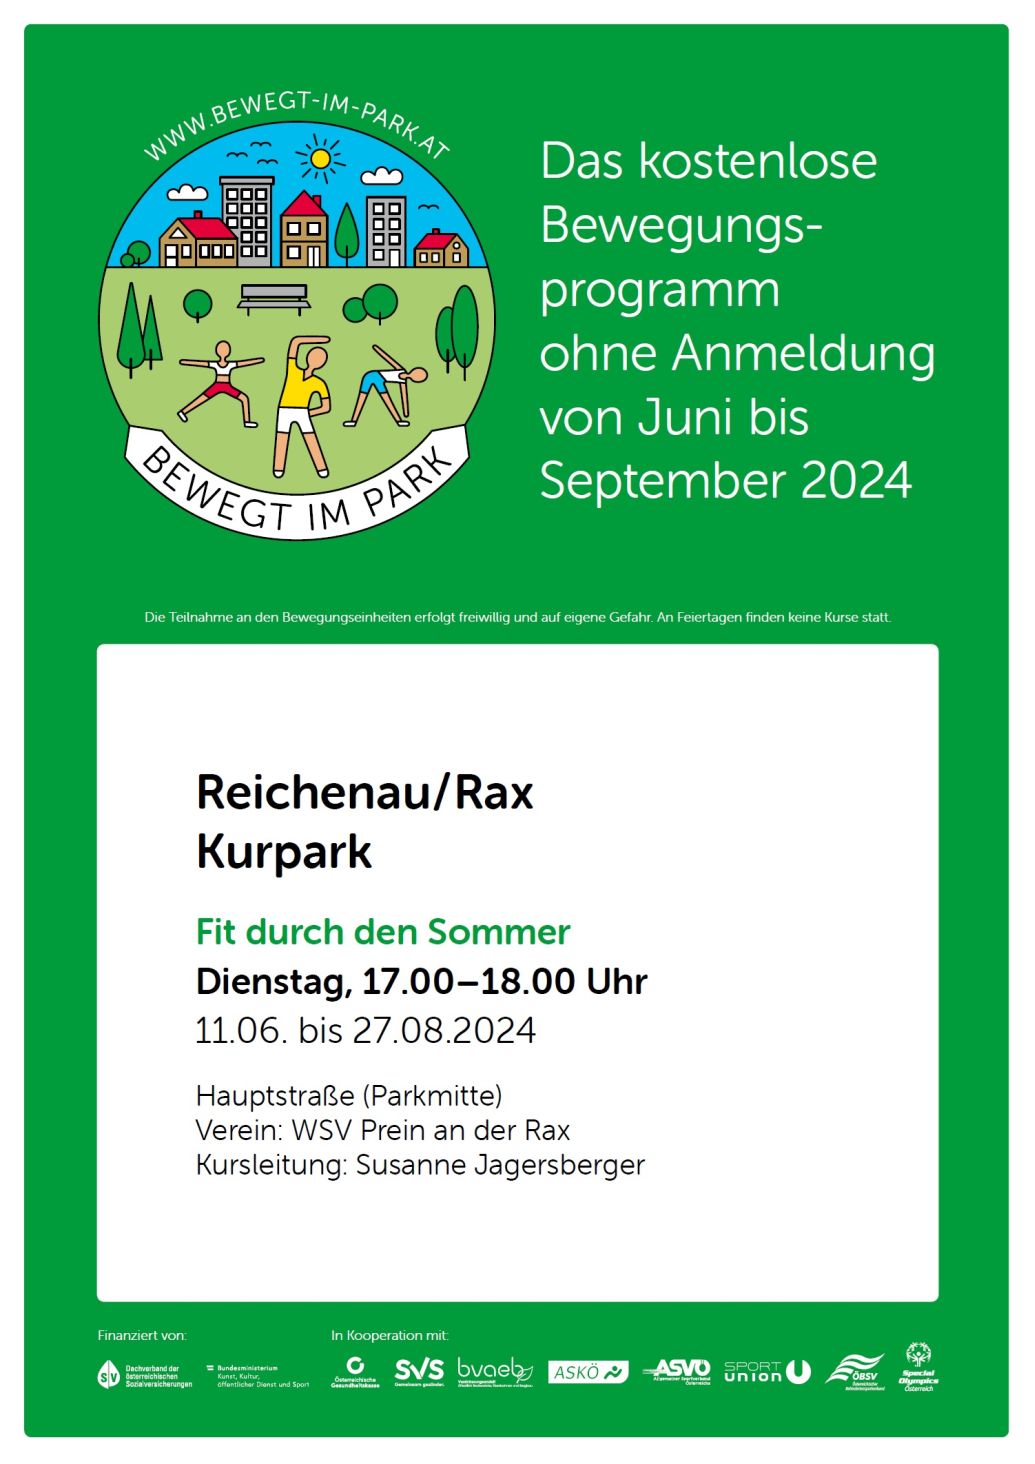 Foto zur Veranstaltung "Bewegt im Park" - Fit durch den Sommer auch in Reichenau
